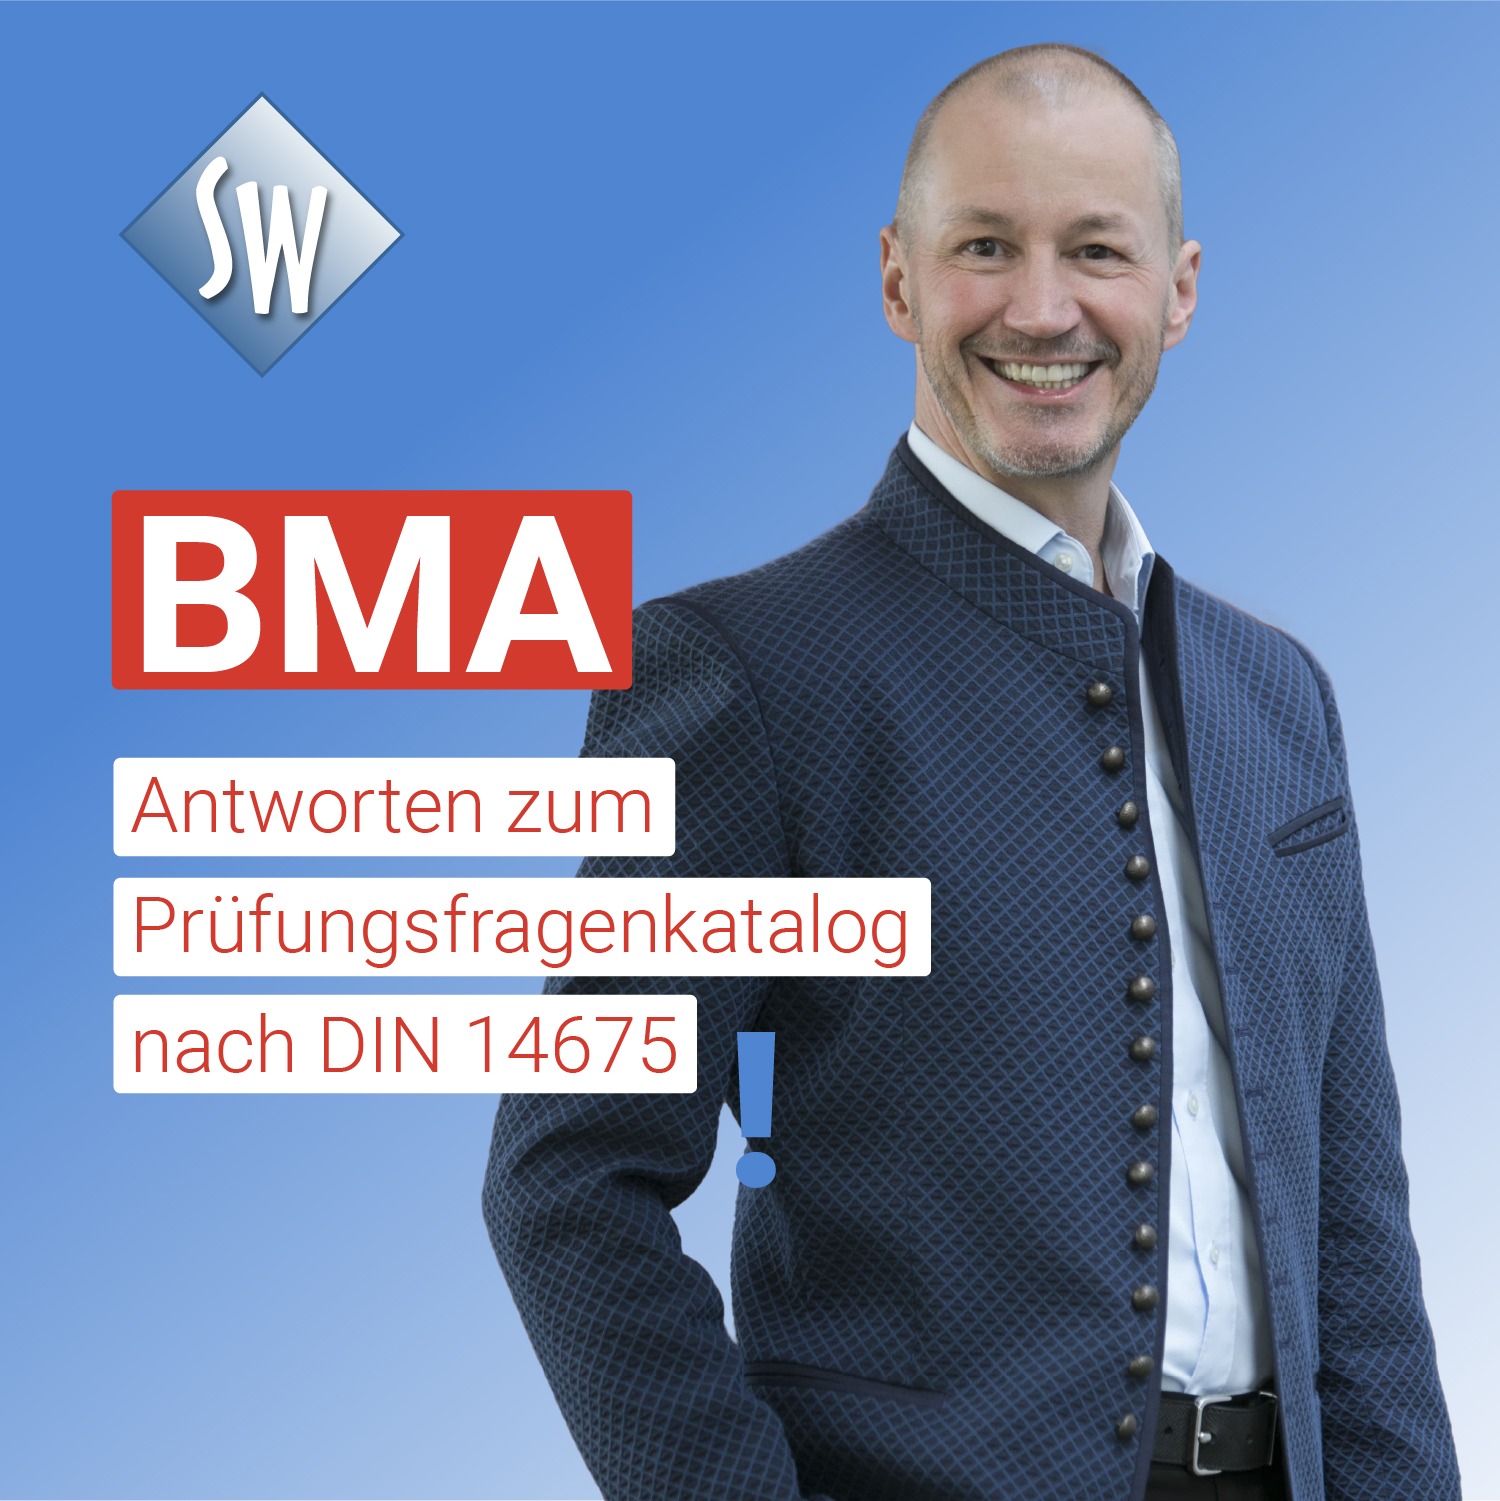 BMA Antworten zum Prüfungsfragenkatalog nach DIN 14675. Stephan Wenzel - Planung, Betrieb und Instandhaltung von Brandmeldeanlagen.